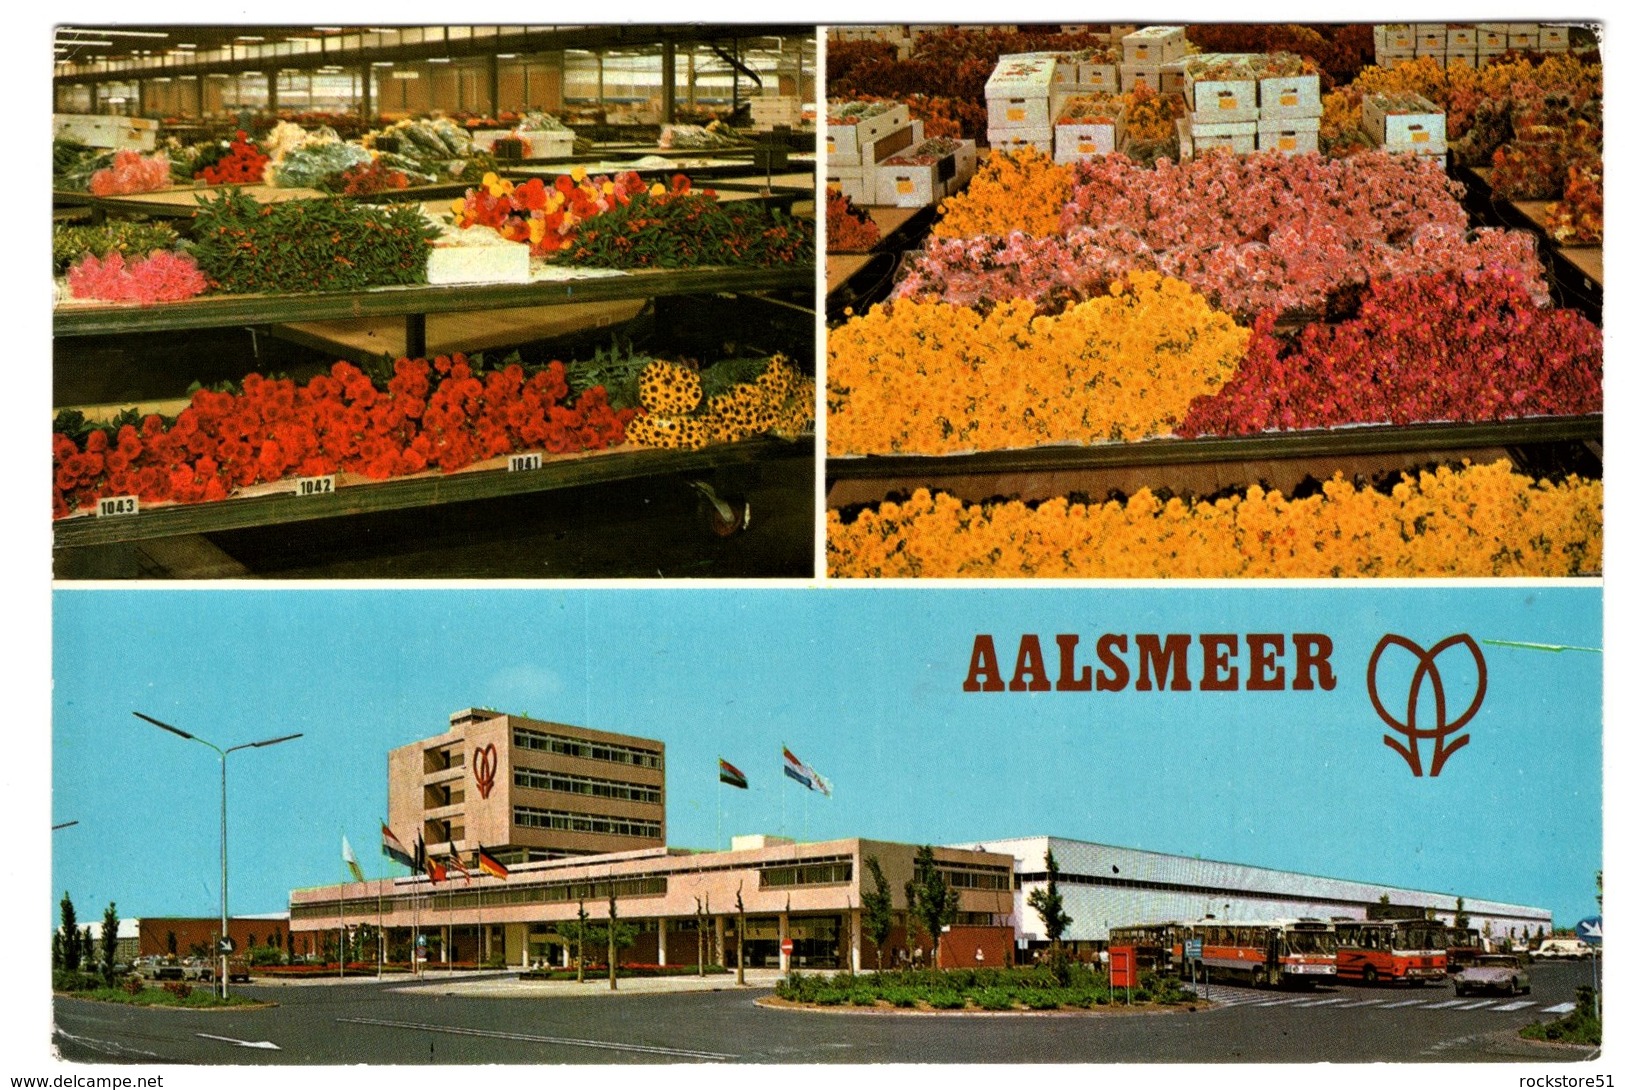 Aalsmeer - Aalsmeer